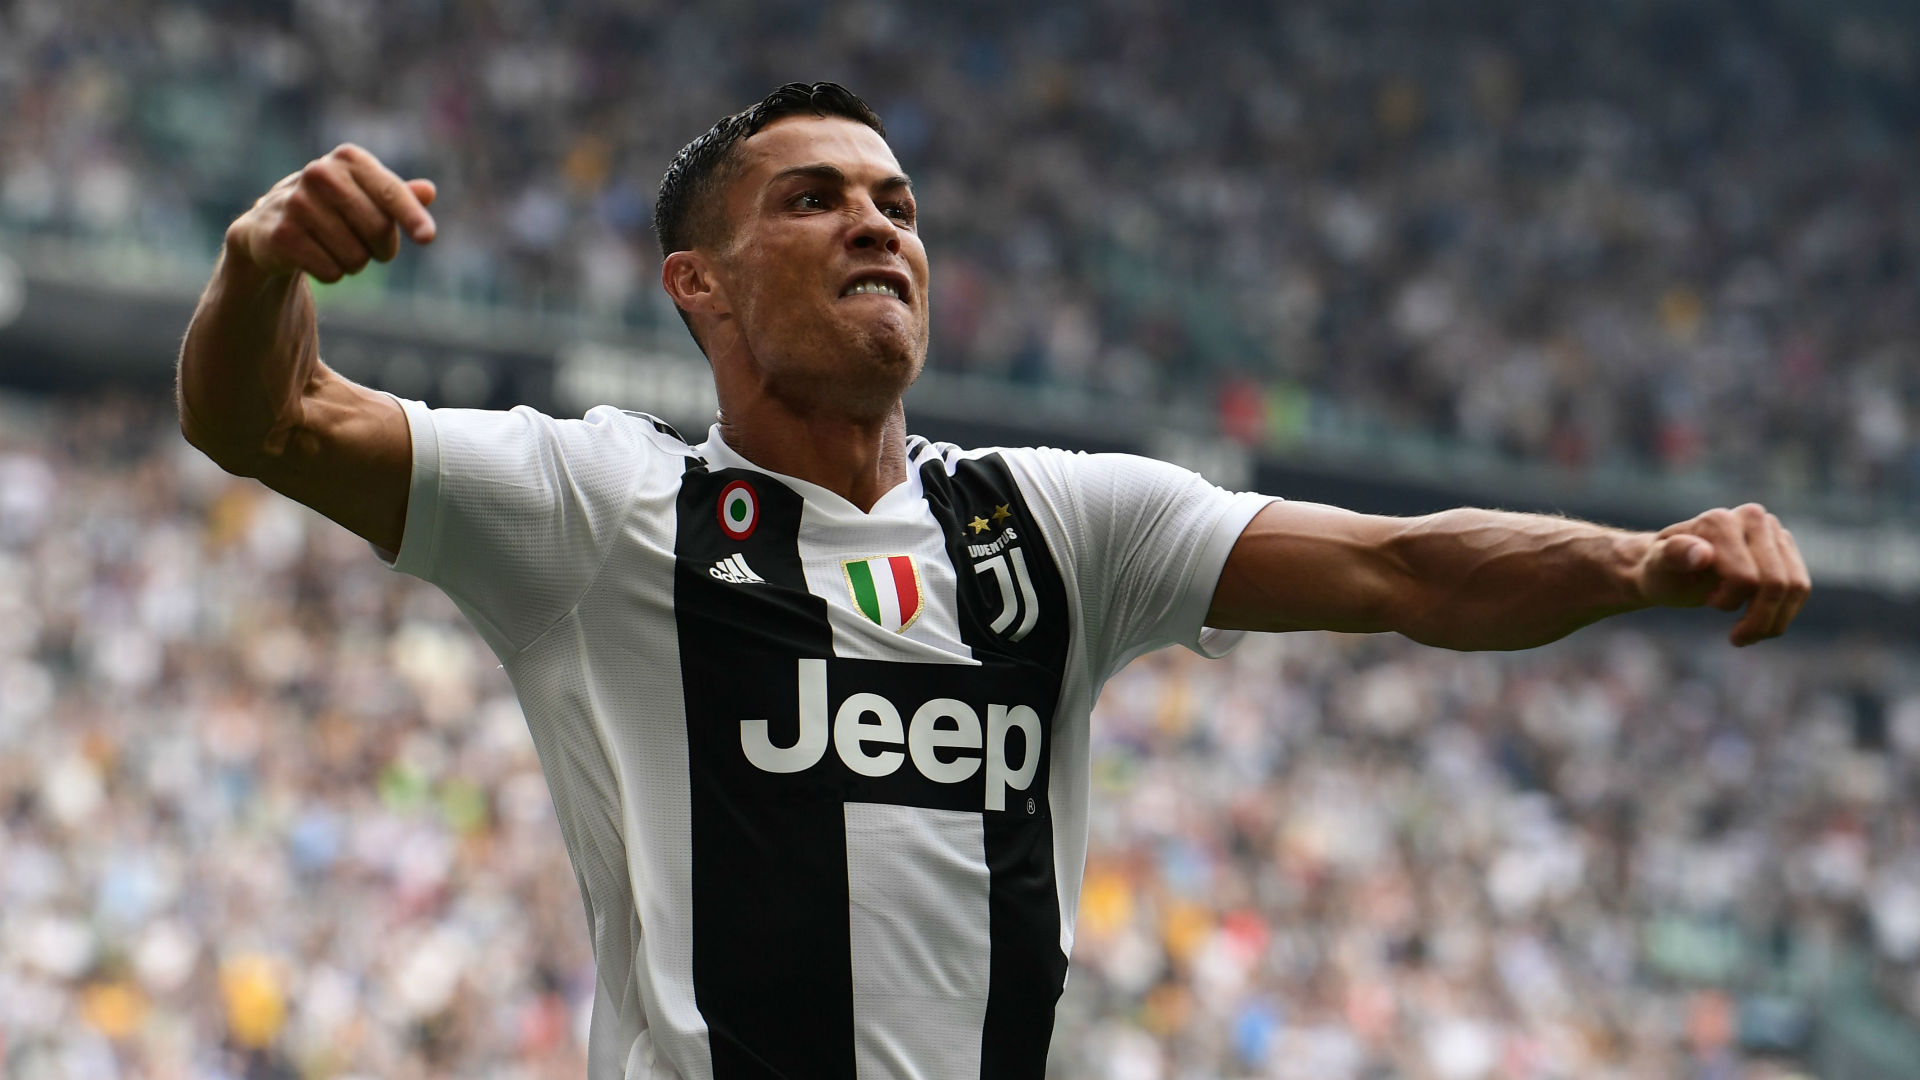 VIDEO - Série A : La Juventus bat Spal avec un Ronaldo puissance 9